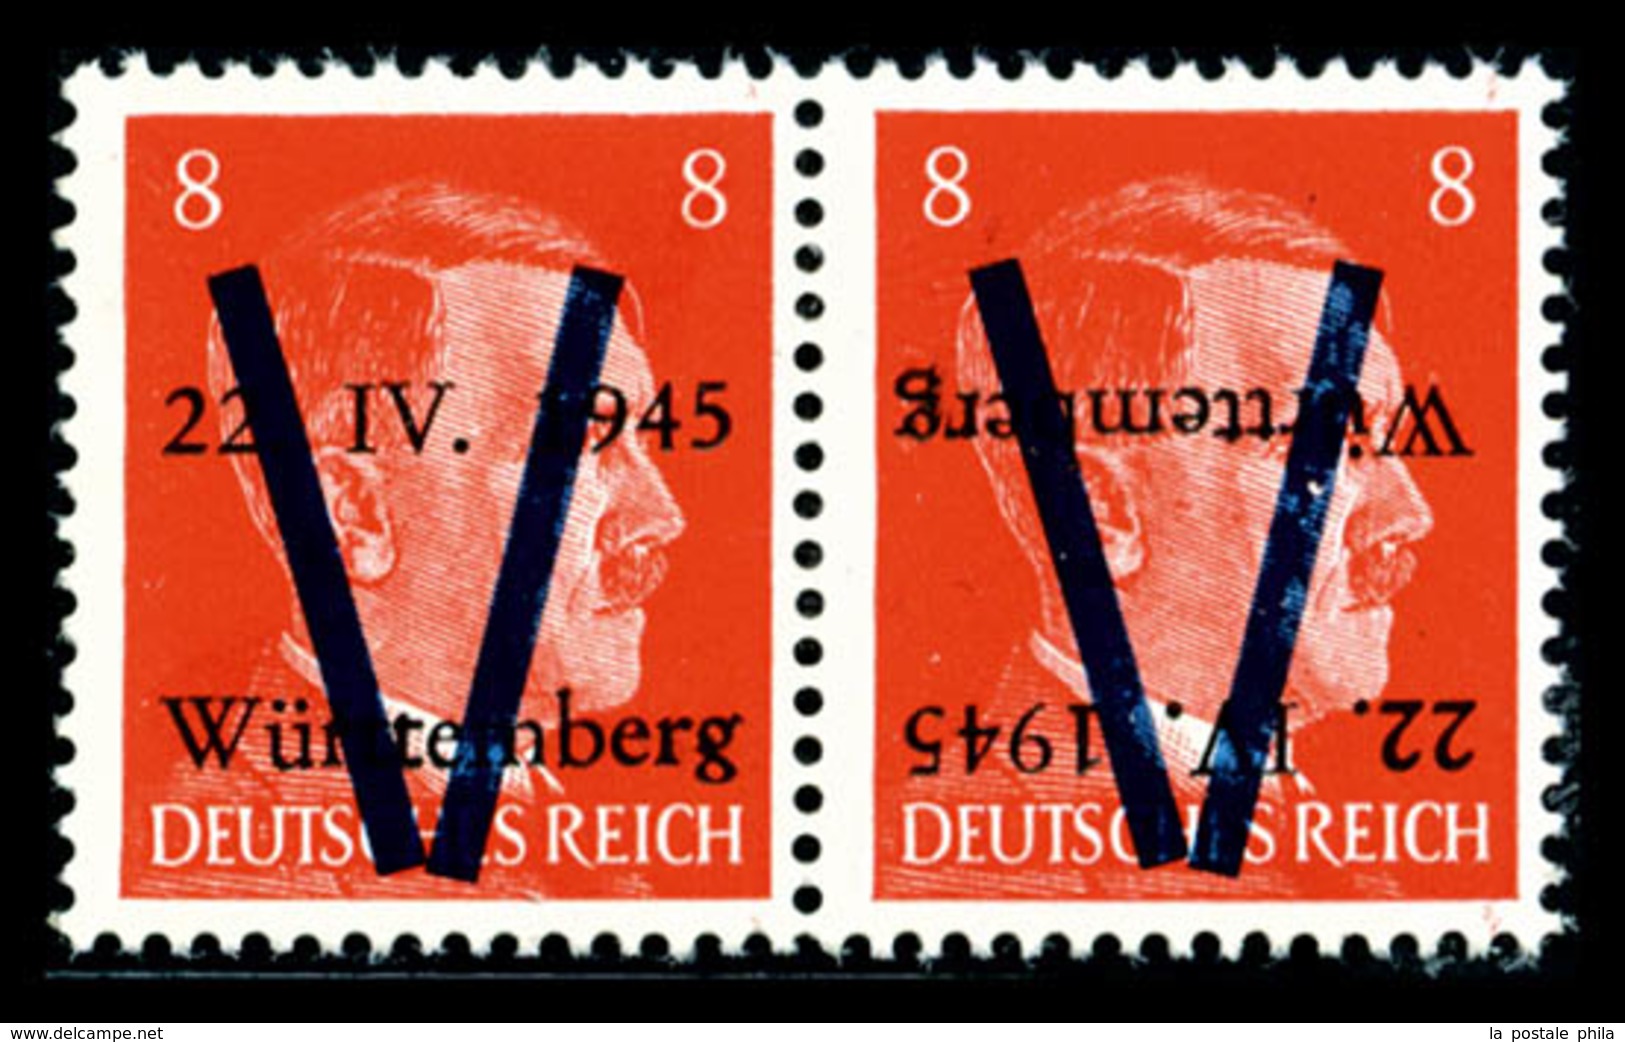 ** N°4a, WURTEMBERG (Allemagne): 8 Pf Orange, Surcharge Renversée Tenant à Normale, R.R.R, SUP (signé Calves/certificat) - Libération